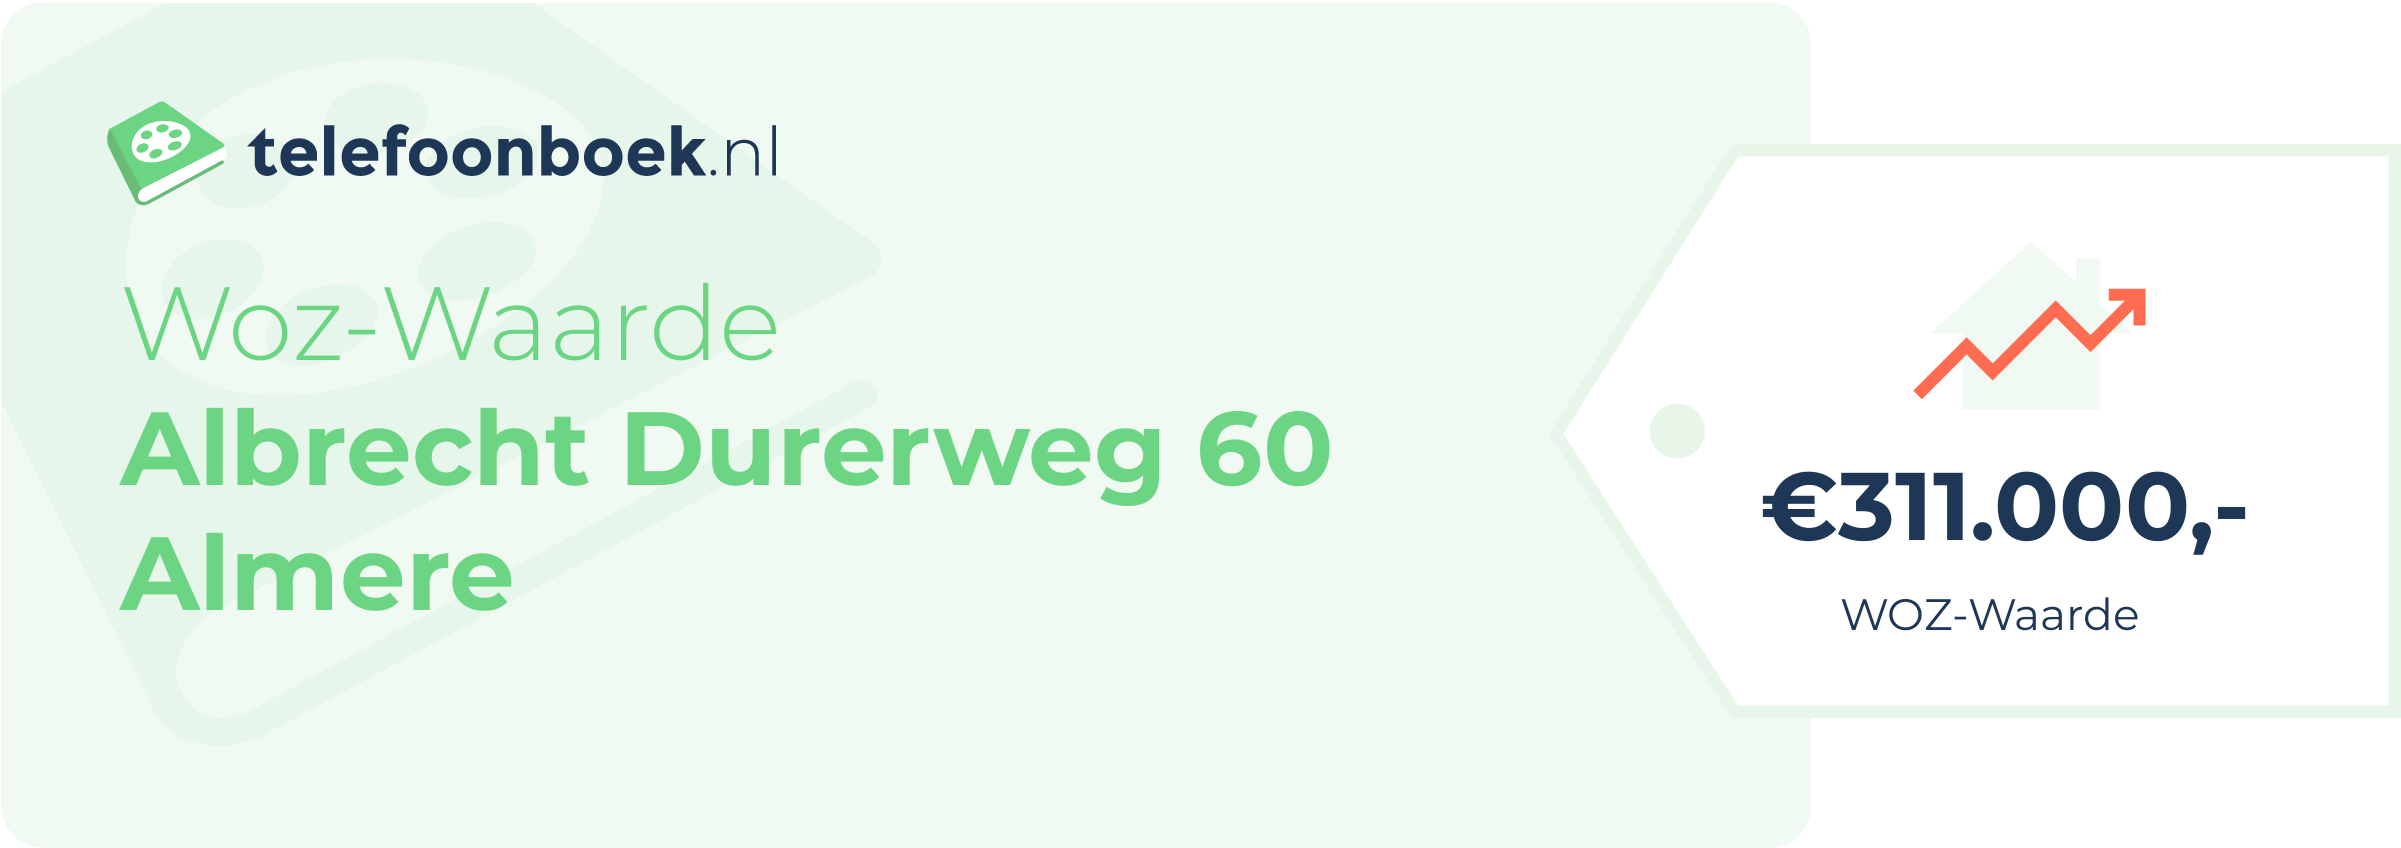 WOZ-waarde Albrecht Durerweg 60 Almere